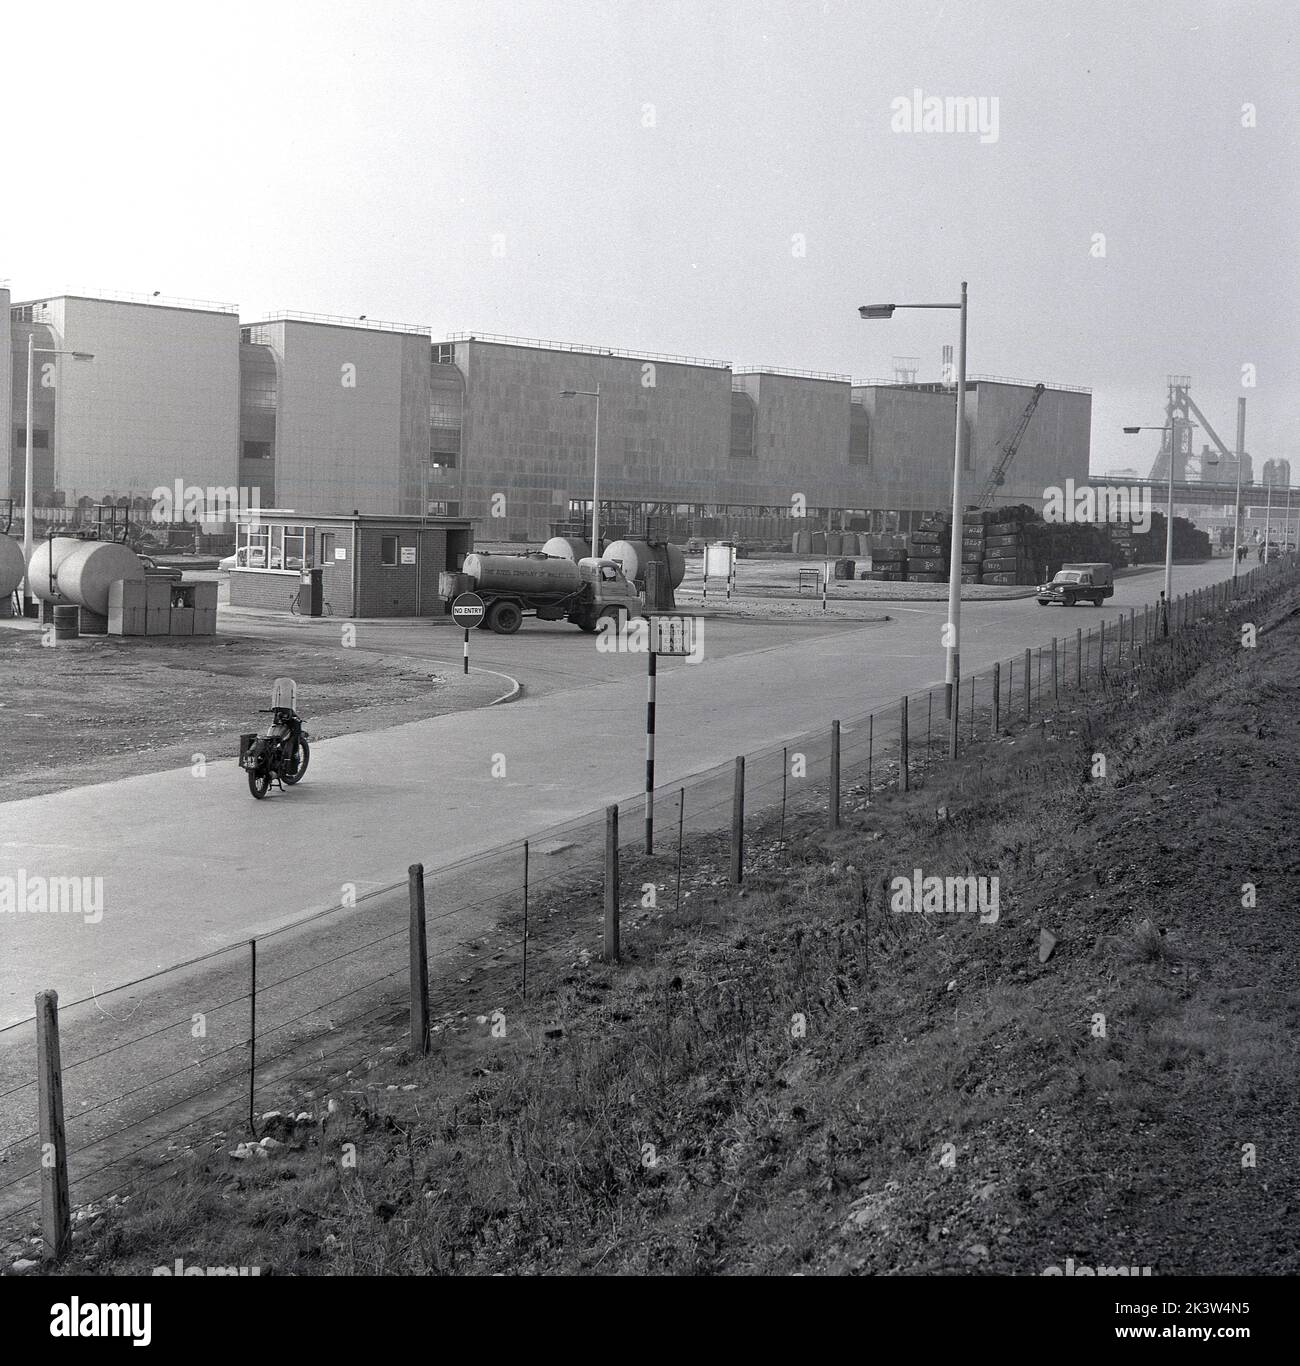 Années 1950, historique, une vue de East Road à l'usine de fabrication géante de la Steel Company of Wales d'Abbey Works à Port Talbot, pays de Galles, Royaume-Uni, montrant de grands bâtiments et un arrêt de bus SCOW. Banque D'Images